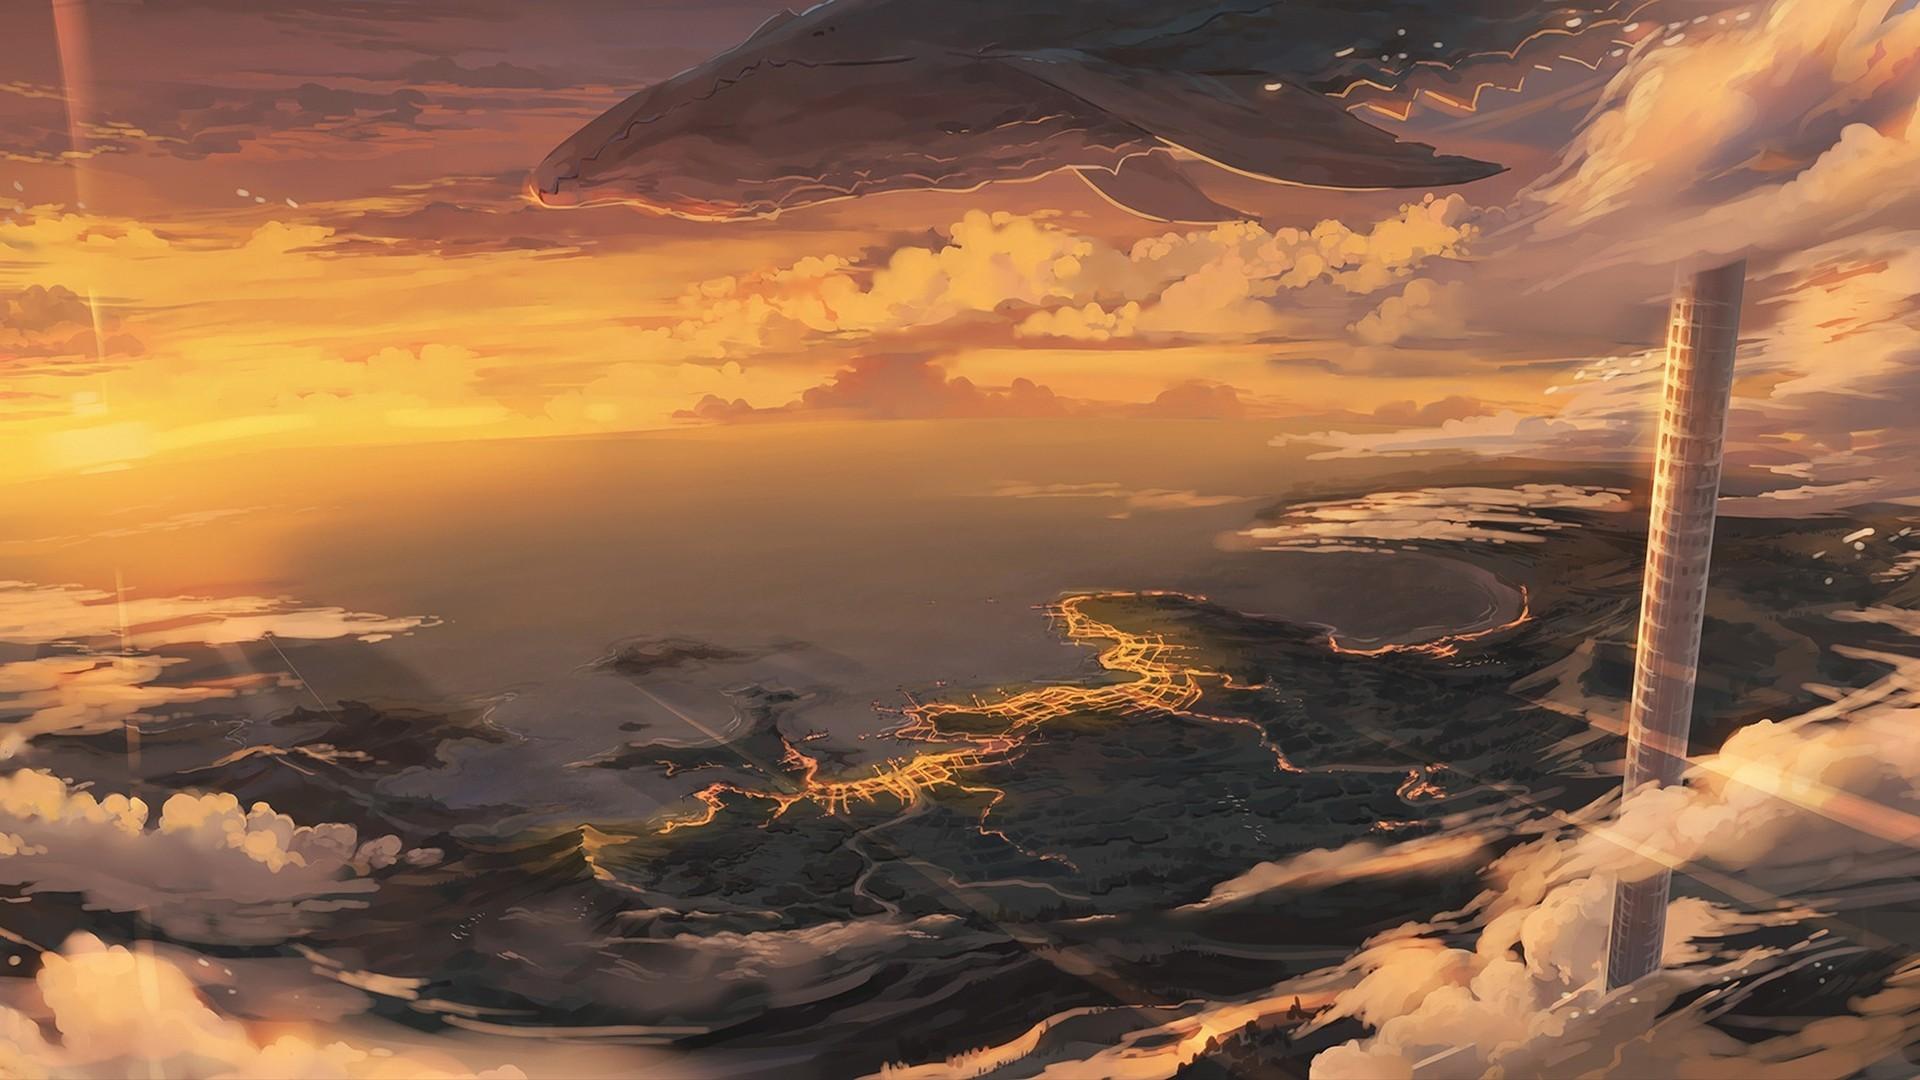 Anime Scenery Sunset 4k Anime Landscape Wallpaper 4k 3840x2160 - Riset